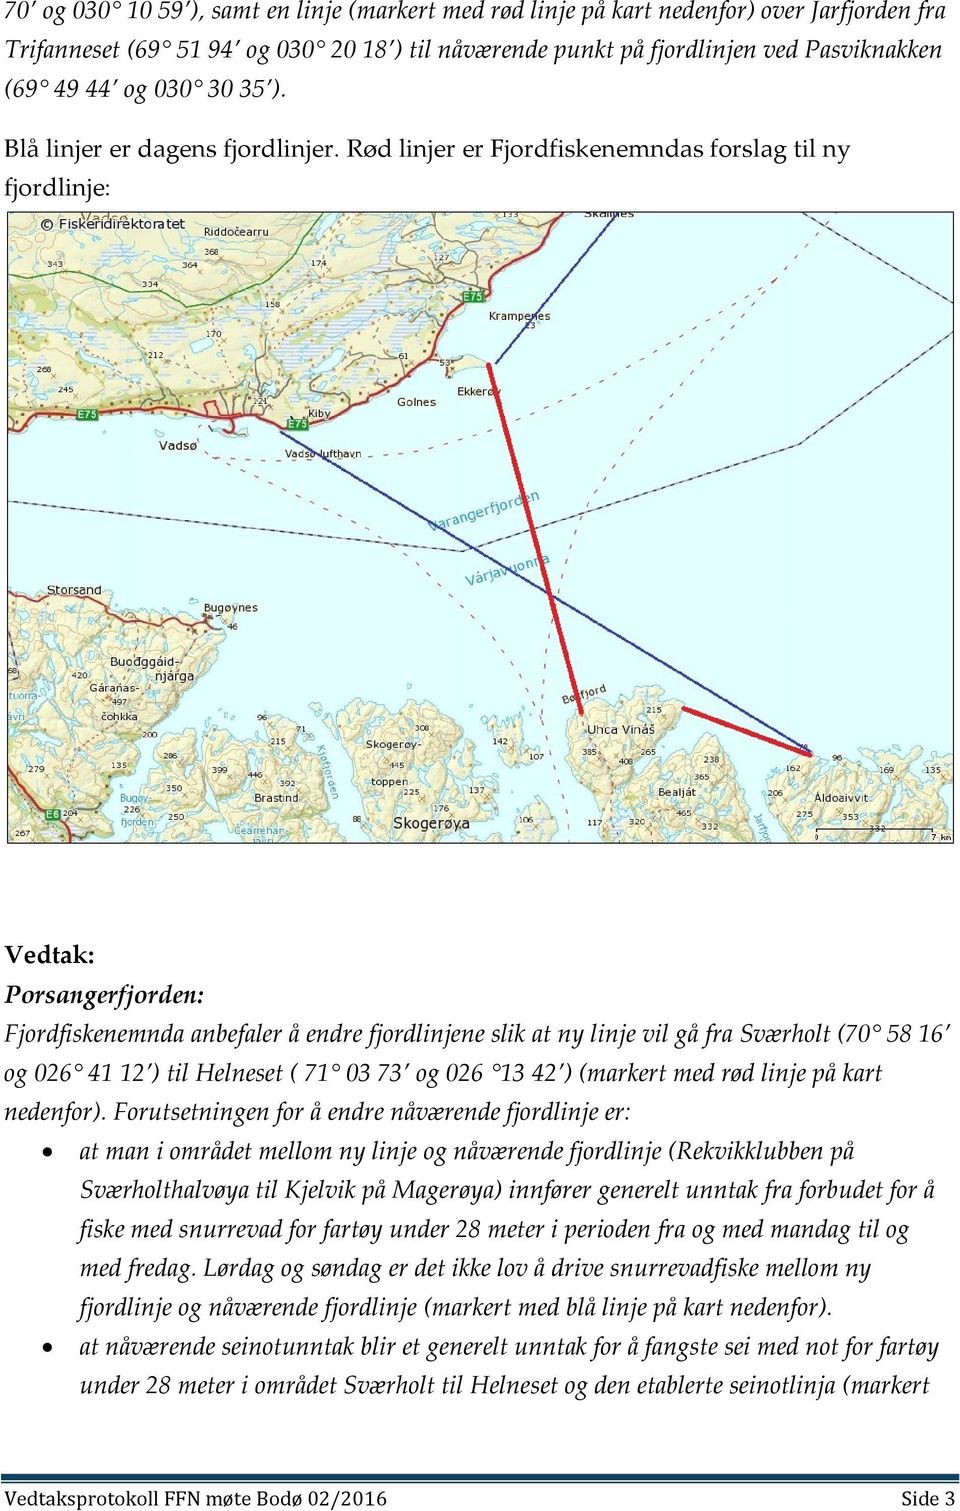 Rød linjer er Fjordfiskenemndas forslag til ny fjordlinje: Porsangerfjorden: Fjordfiskenemnda anbefaler å endre fjordlinjene slik at ny linje vil gå fra Sværholt (70 58 16 og 026 41 12 ) til Helneset